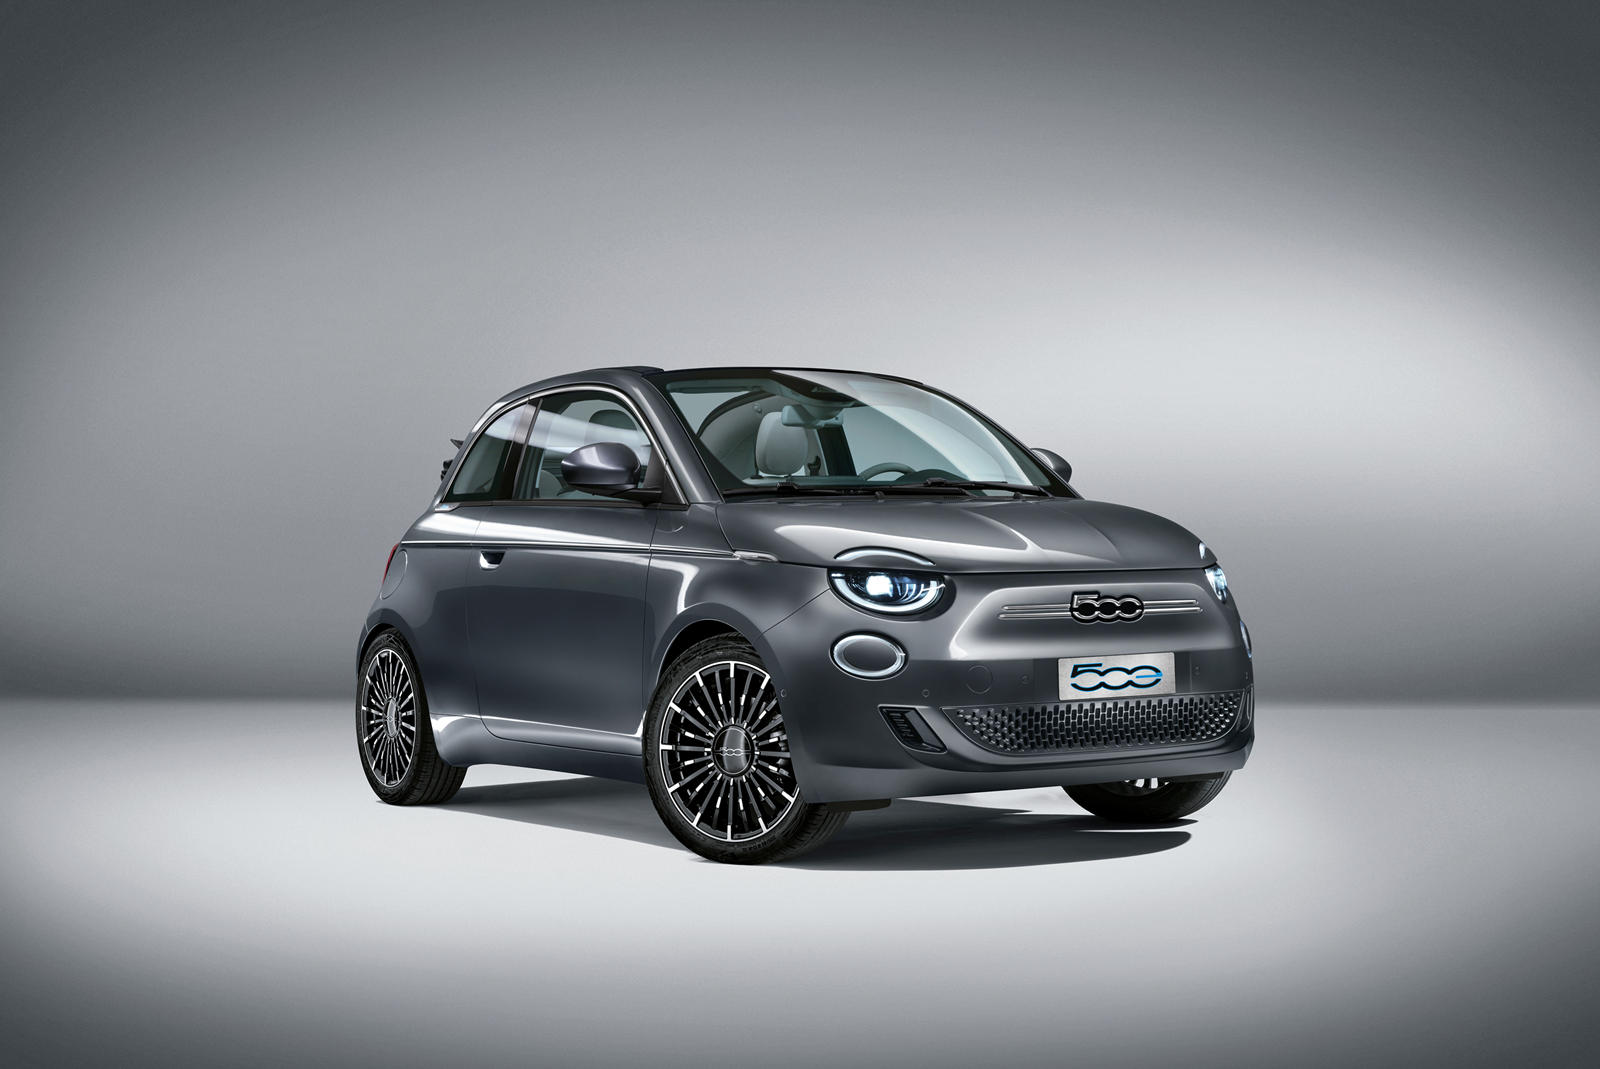 Fiat застрял в каком-то подвешенном состоянии. Достигнув значительных успехов с моделью 500, семейство выросло благодаря появлению менее впечатляющего Fiat 500L в 2014 году и 500X в 2016 году. Последний стал, пожалуй, одним из лучших продуктов Fiat в